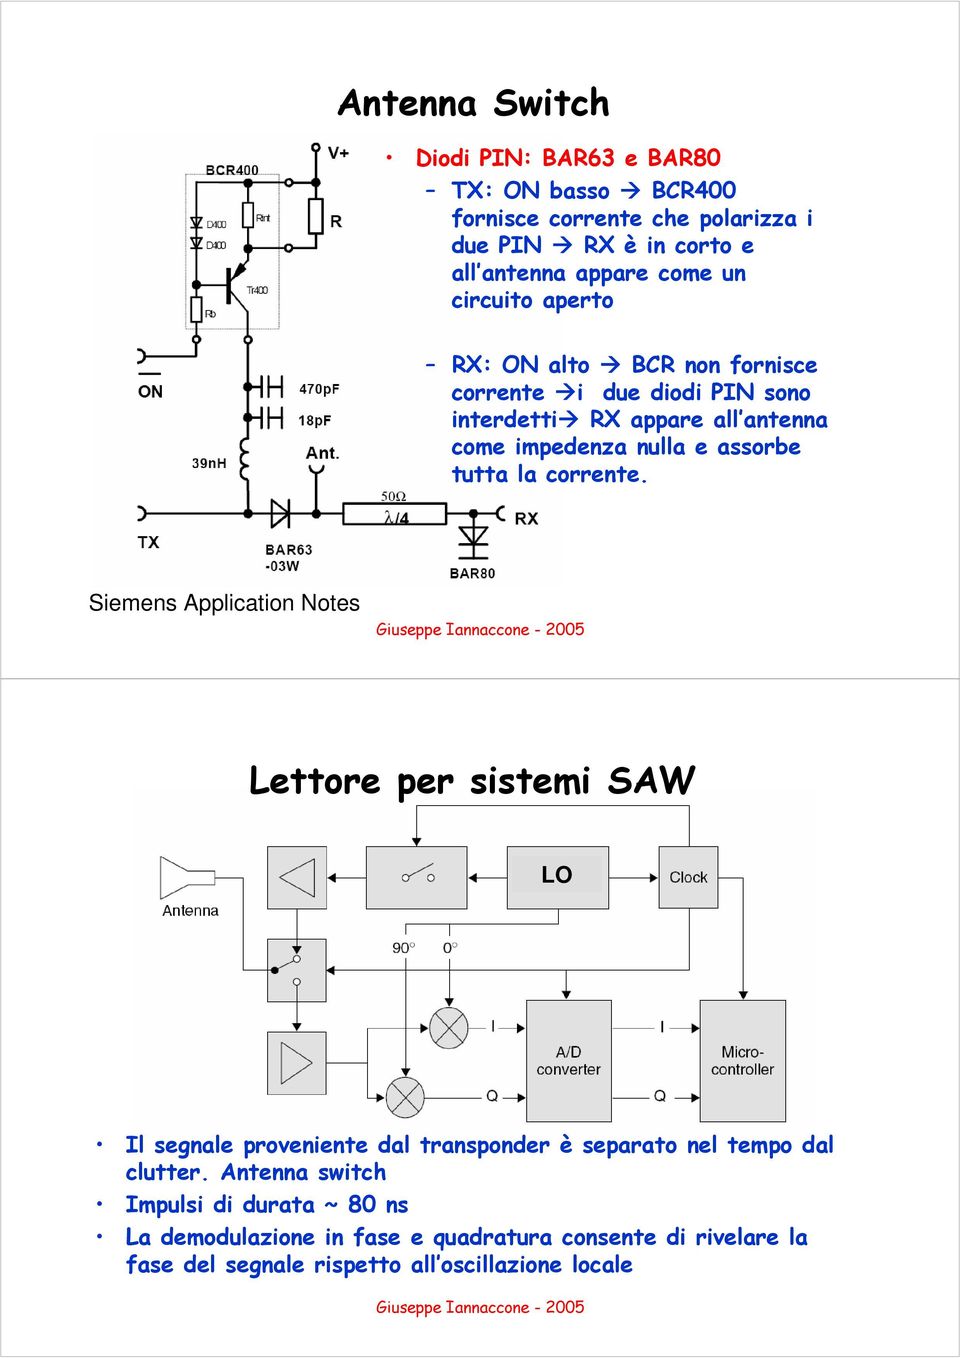 la corrente. Siemens Application Notes Lettore per sistemi SAW LO Il segnale proveniente dal transponder è separato nel tempo dal clutter.